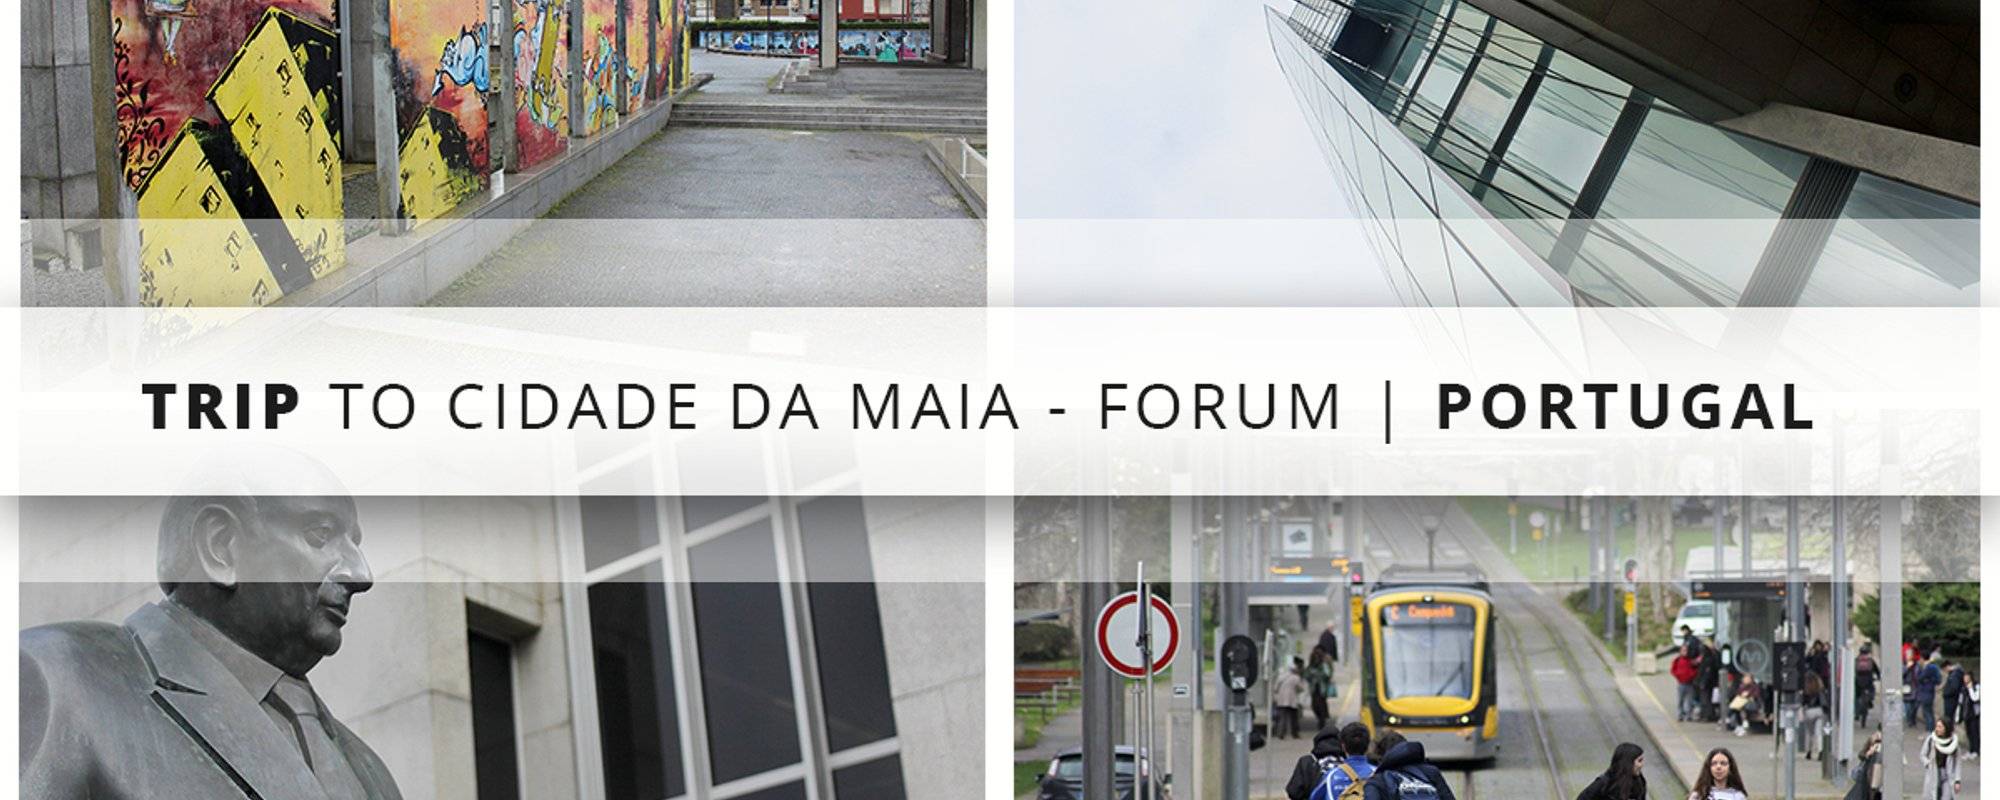 Trip to Cidade da Maia - Fórum | Portugal